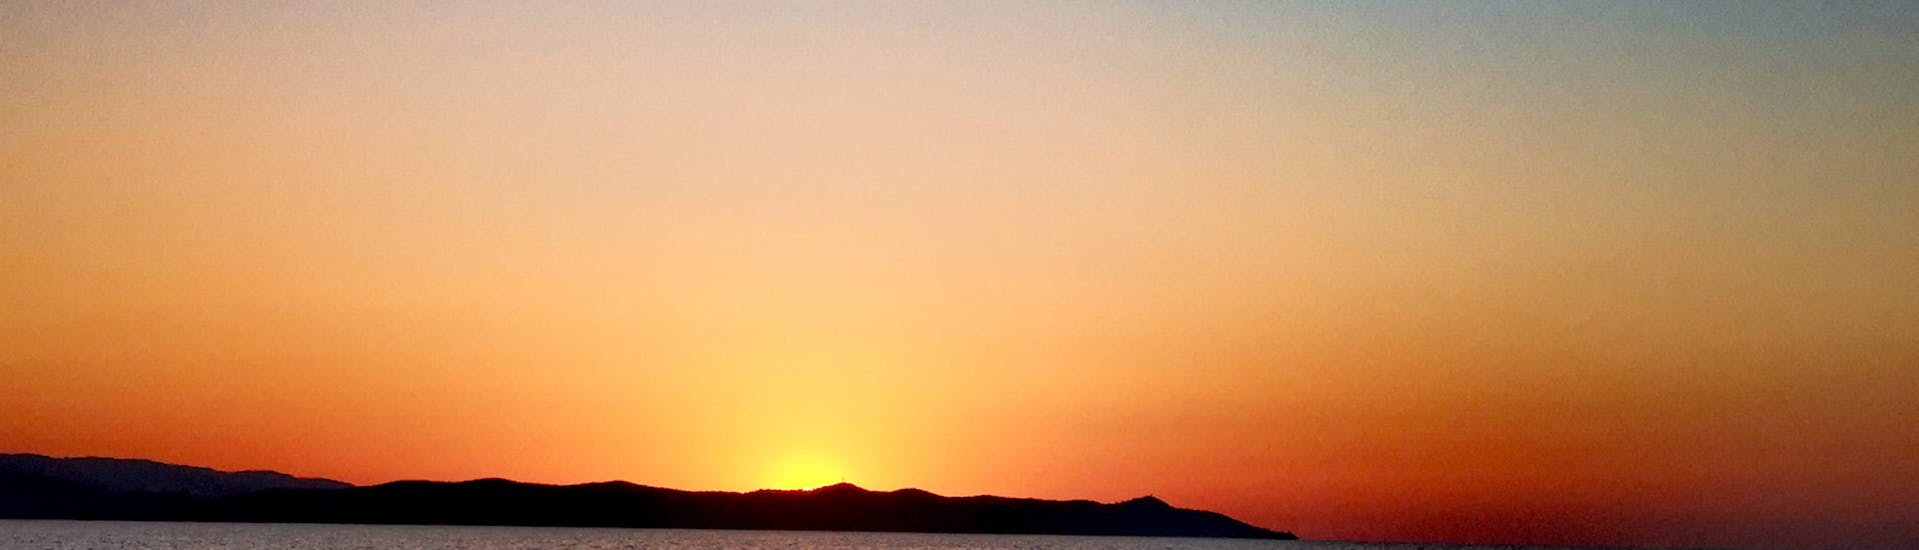 Uitzicht op de zonsopgang vanaf de boot van Evasion Bleue.